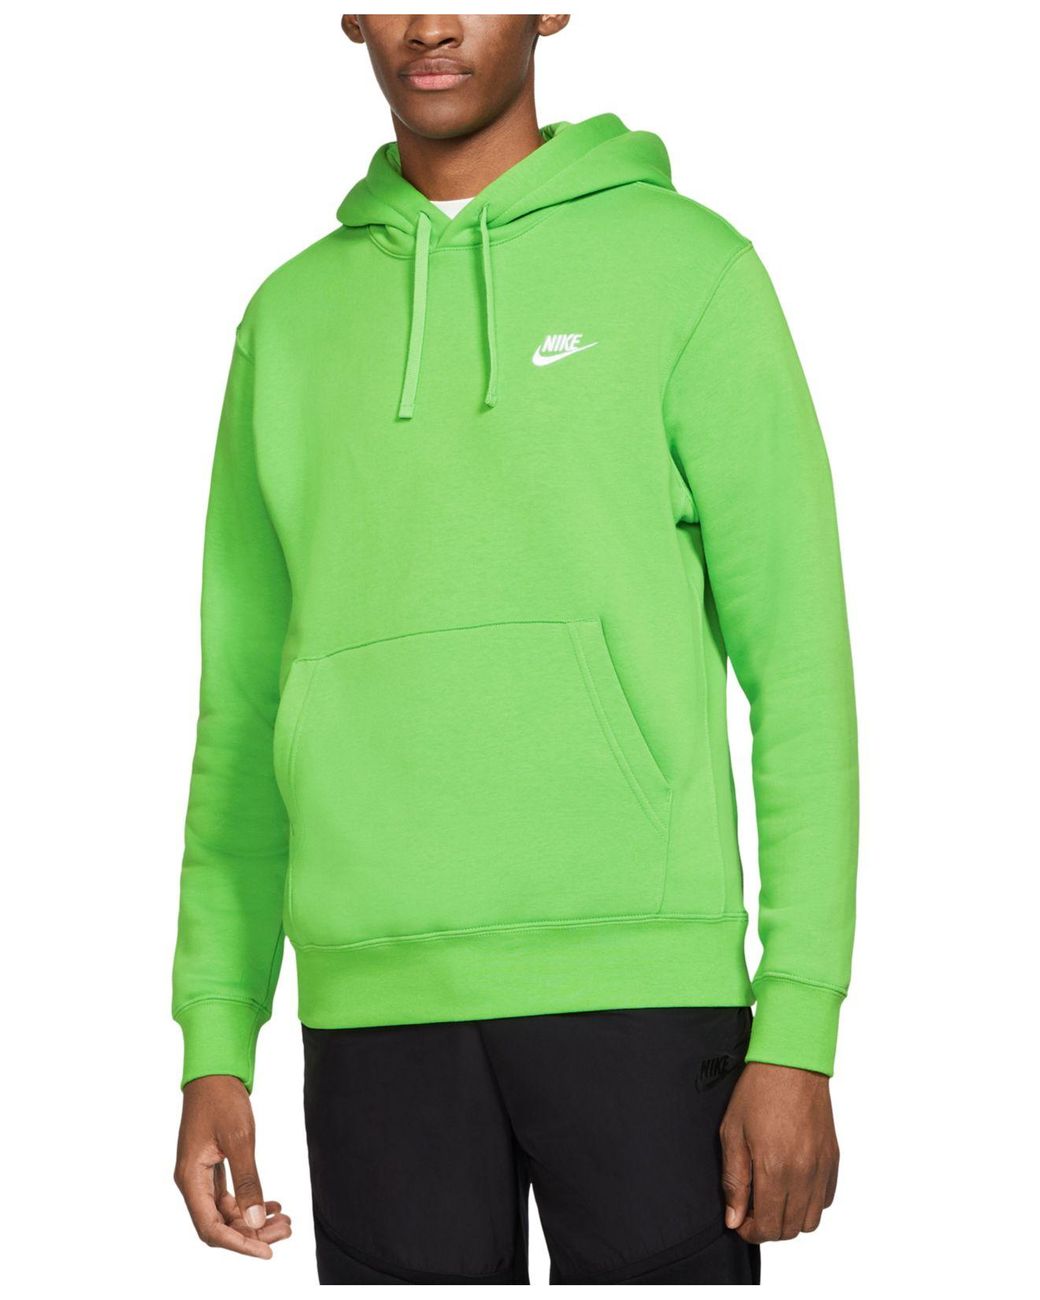 Nike Sportswear Club Fleece Pullover Hoodie in Green for Men - Lyst